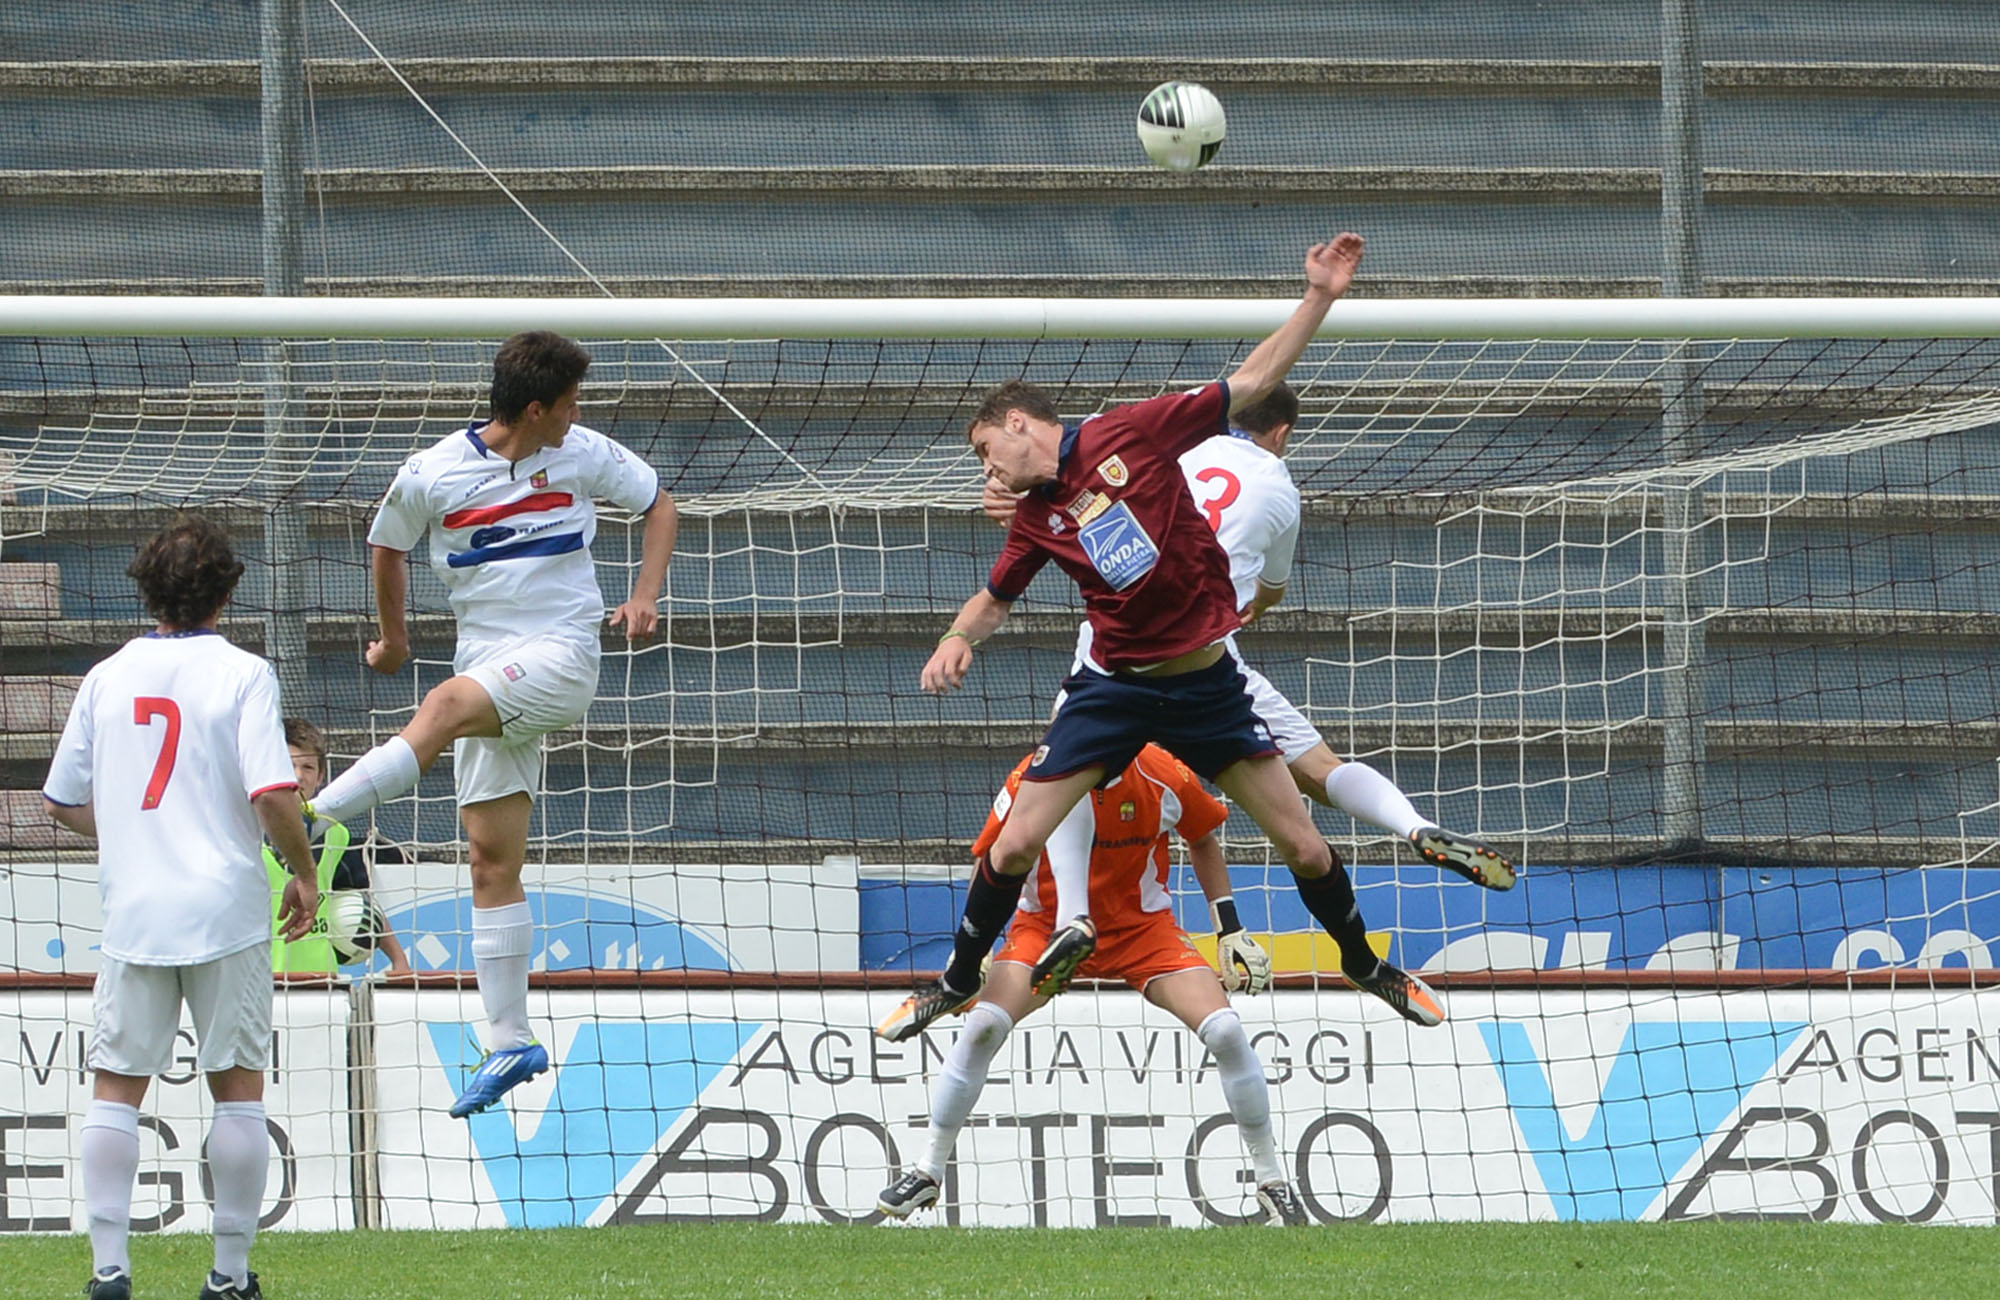 Reggiana-Lumezzane 1-0